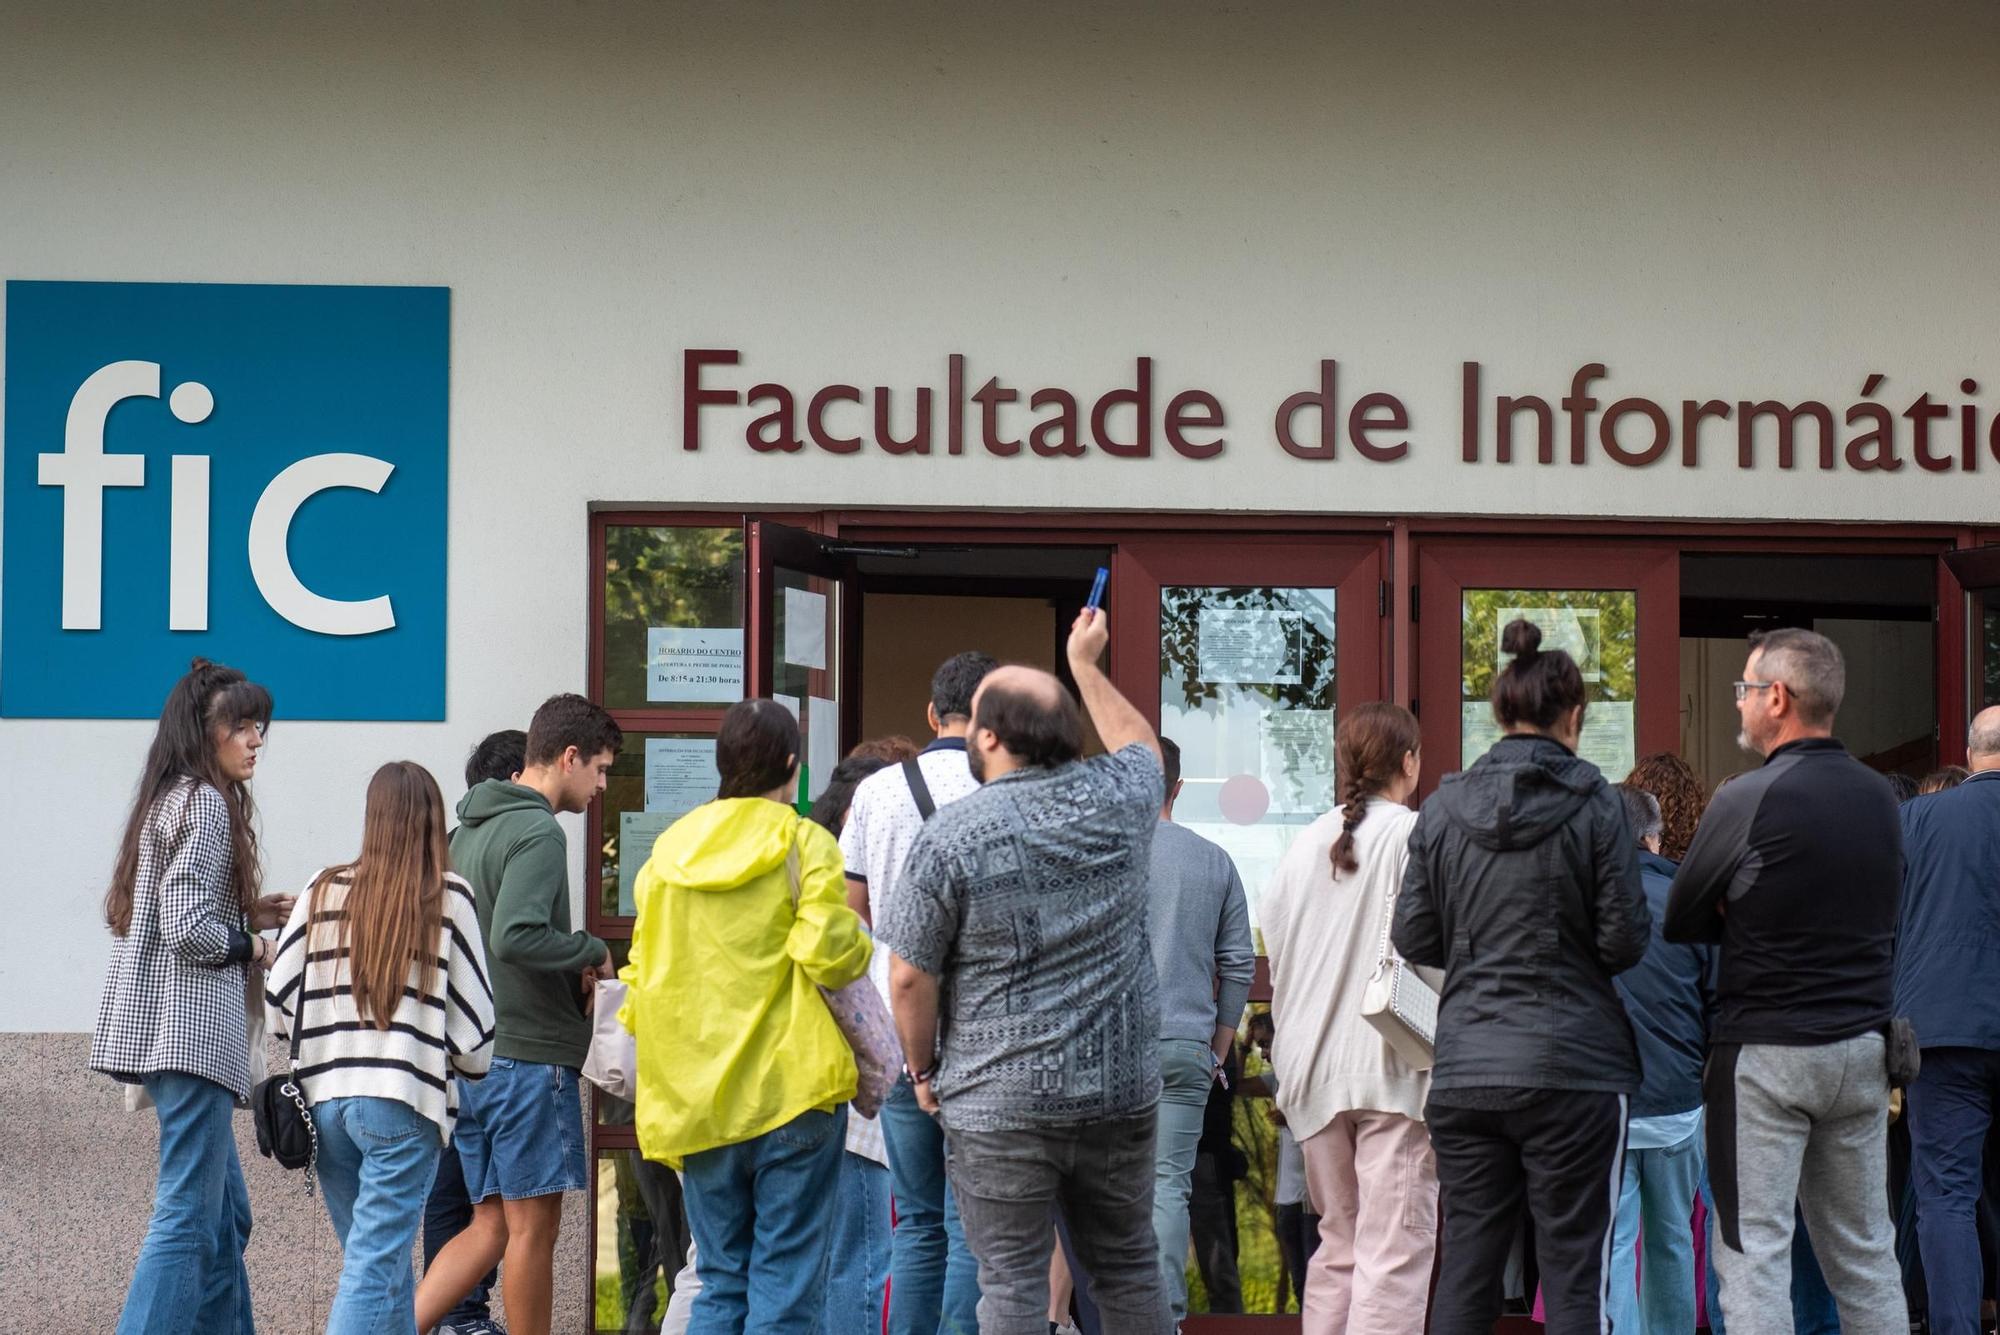 Exámenes en A Coruña de las oposiciones para plazas de la Administración General del Estado